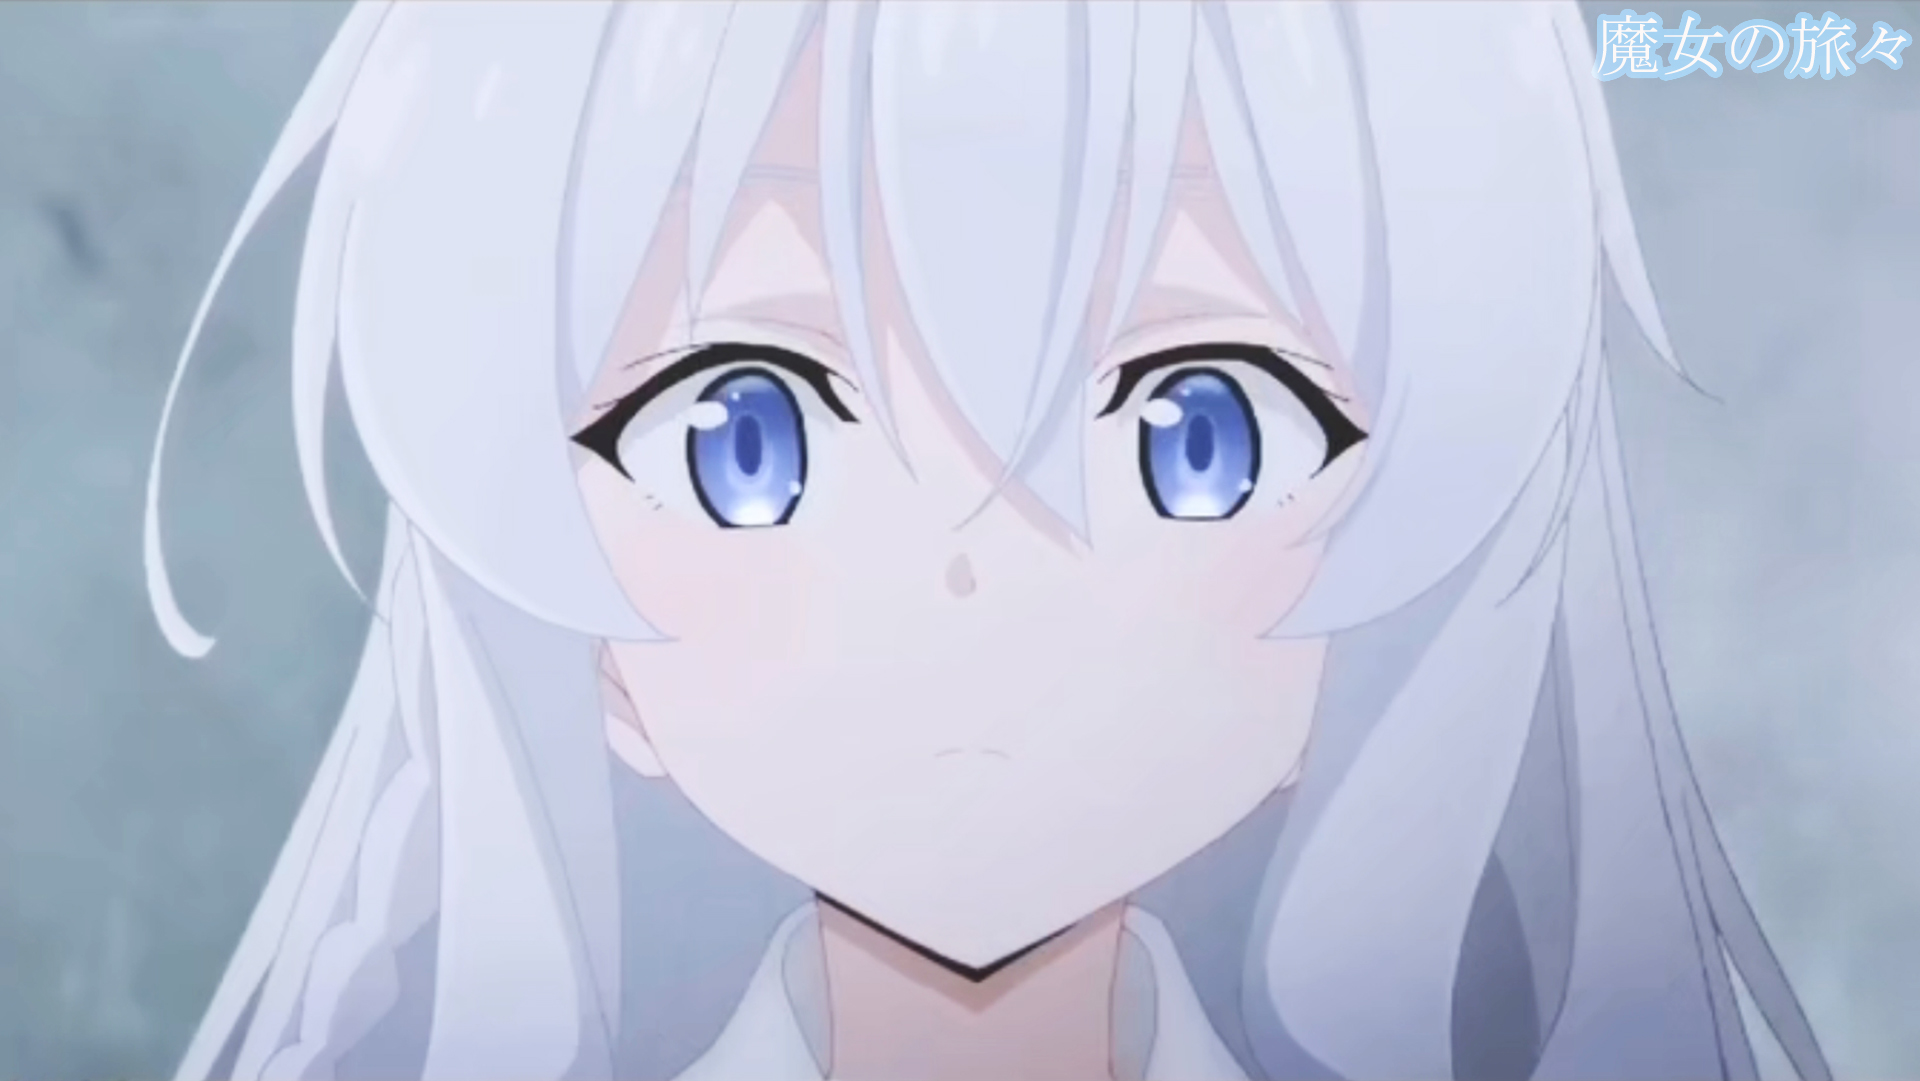 Vẽ mắt là một trong những bước quan trọng khi vẽ Anime. Hãy tìm hiểu cách vẽ mắt Anime qua bức tranh Anime mắt này. Bạn sẽ được khám phá ra những kỹ thuật và bí quyết để tạo ra một bức tranh Anime mắt chân thật và ấn tượng.